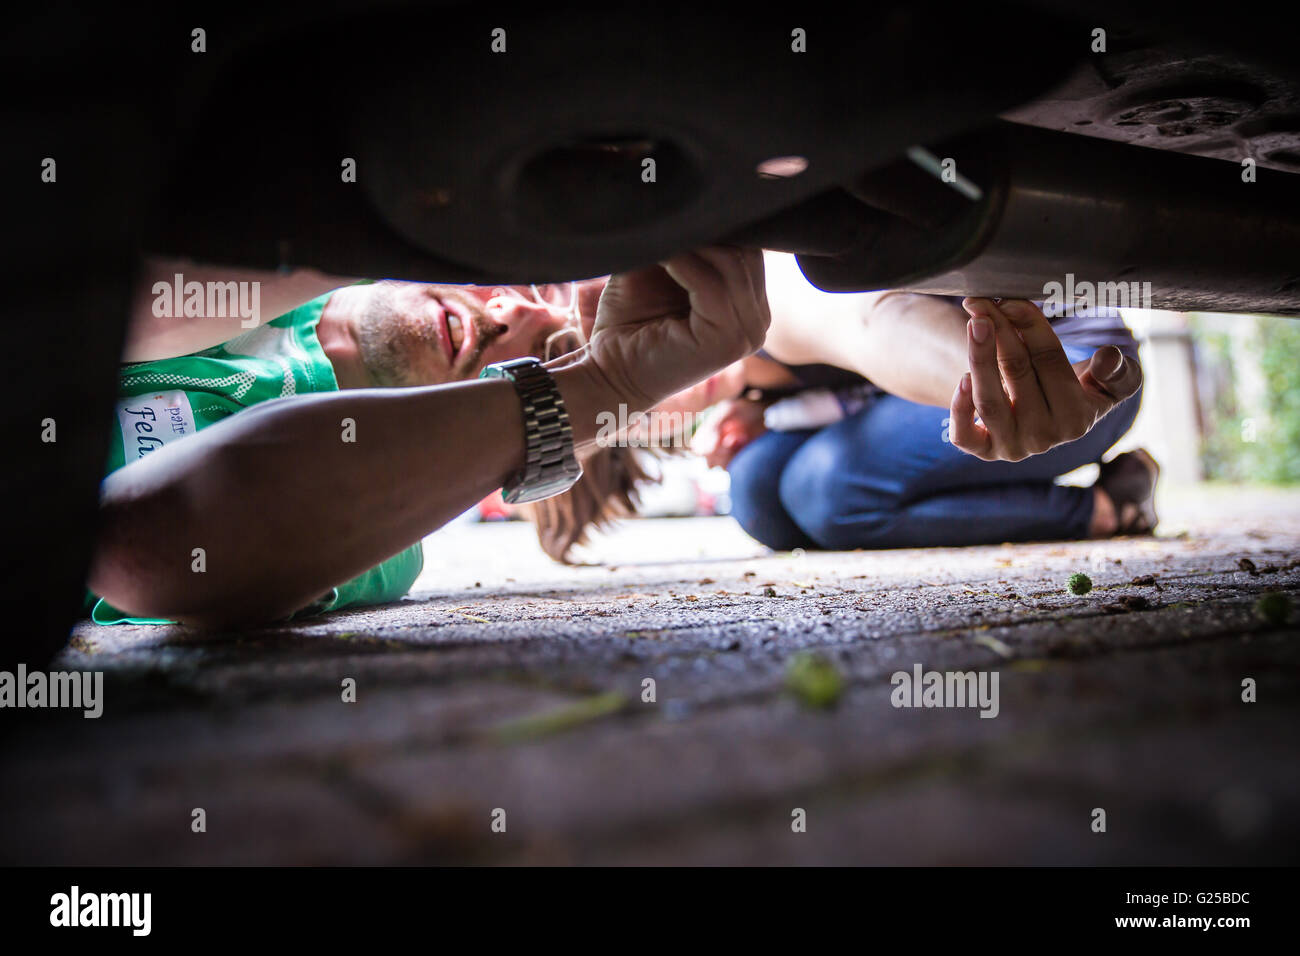 a do-it-yourselfer repairs his car. Man repairing his car. A man beneath his car does repair work. Stock Photo